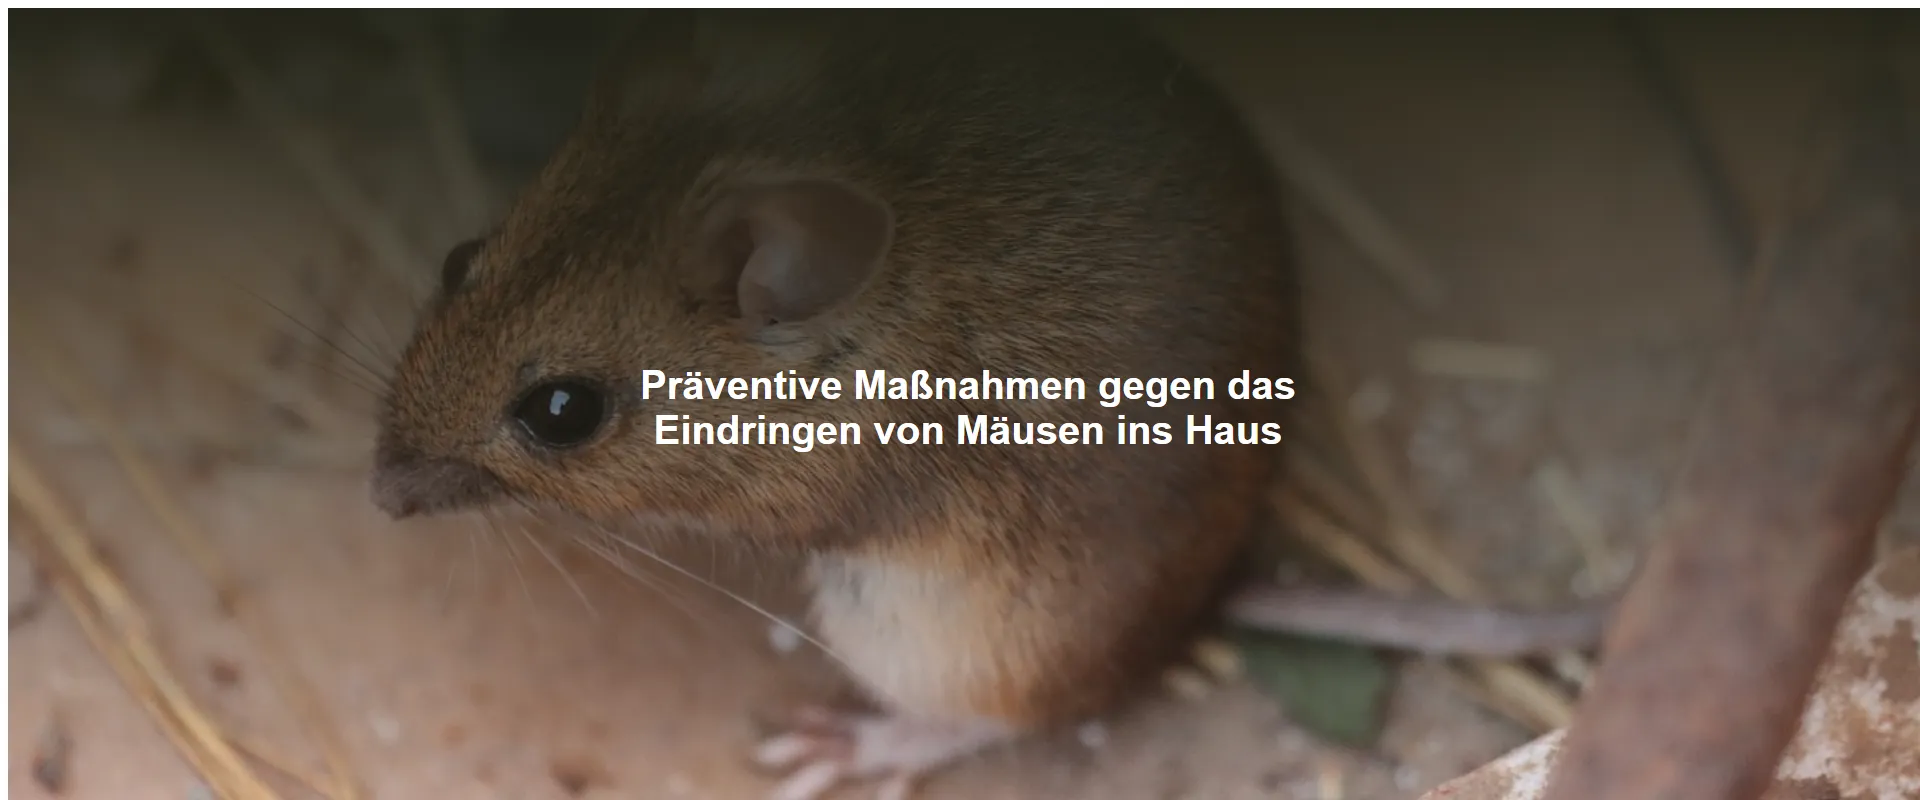 Präventive Maßnahmen gegen das Eindringen von Mäusen ins Haus